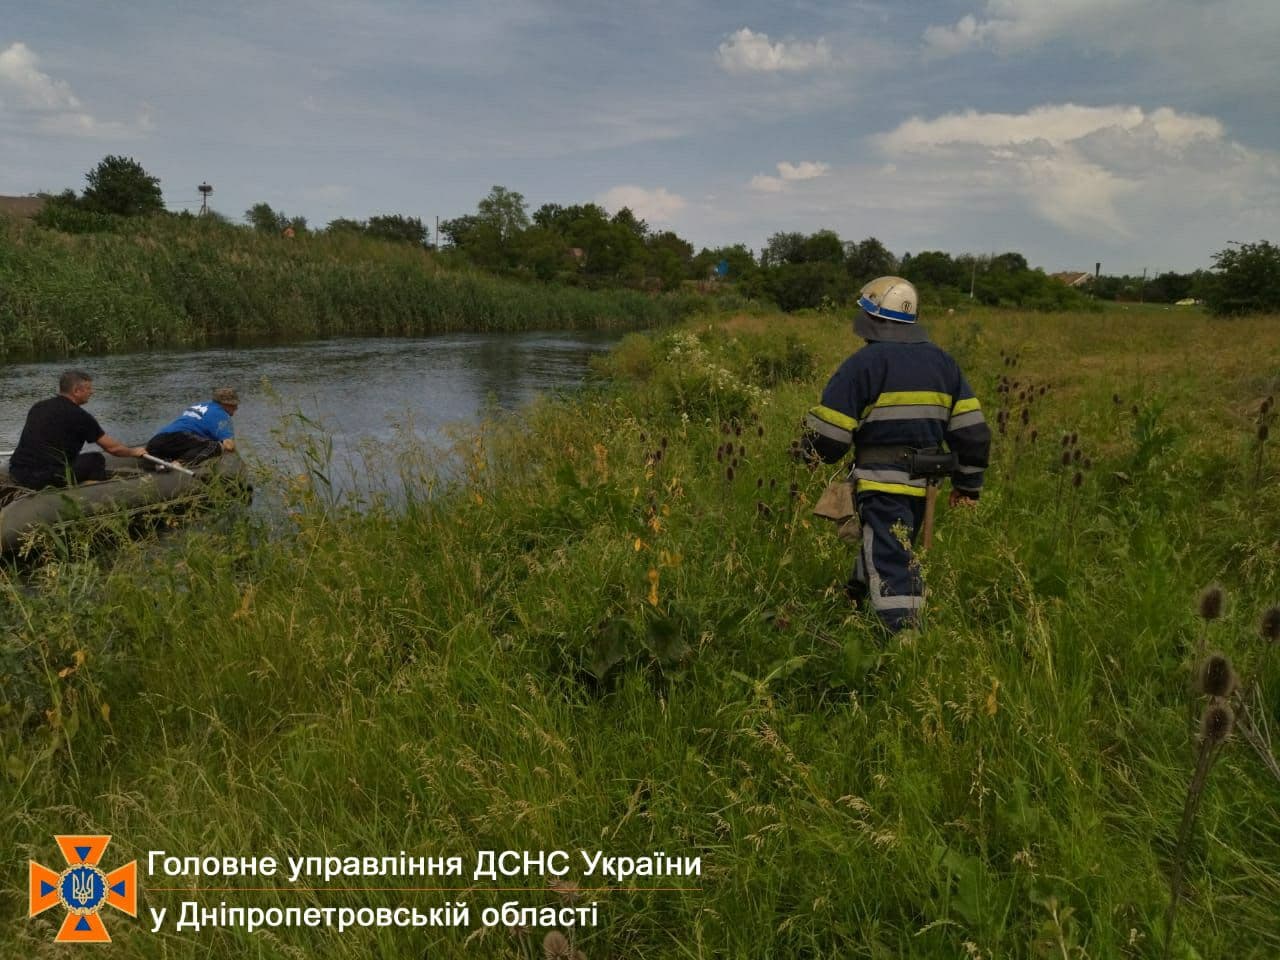 В Синельниковском районе утонул ребенок - фото: ГСЧС